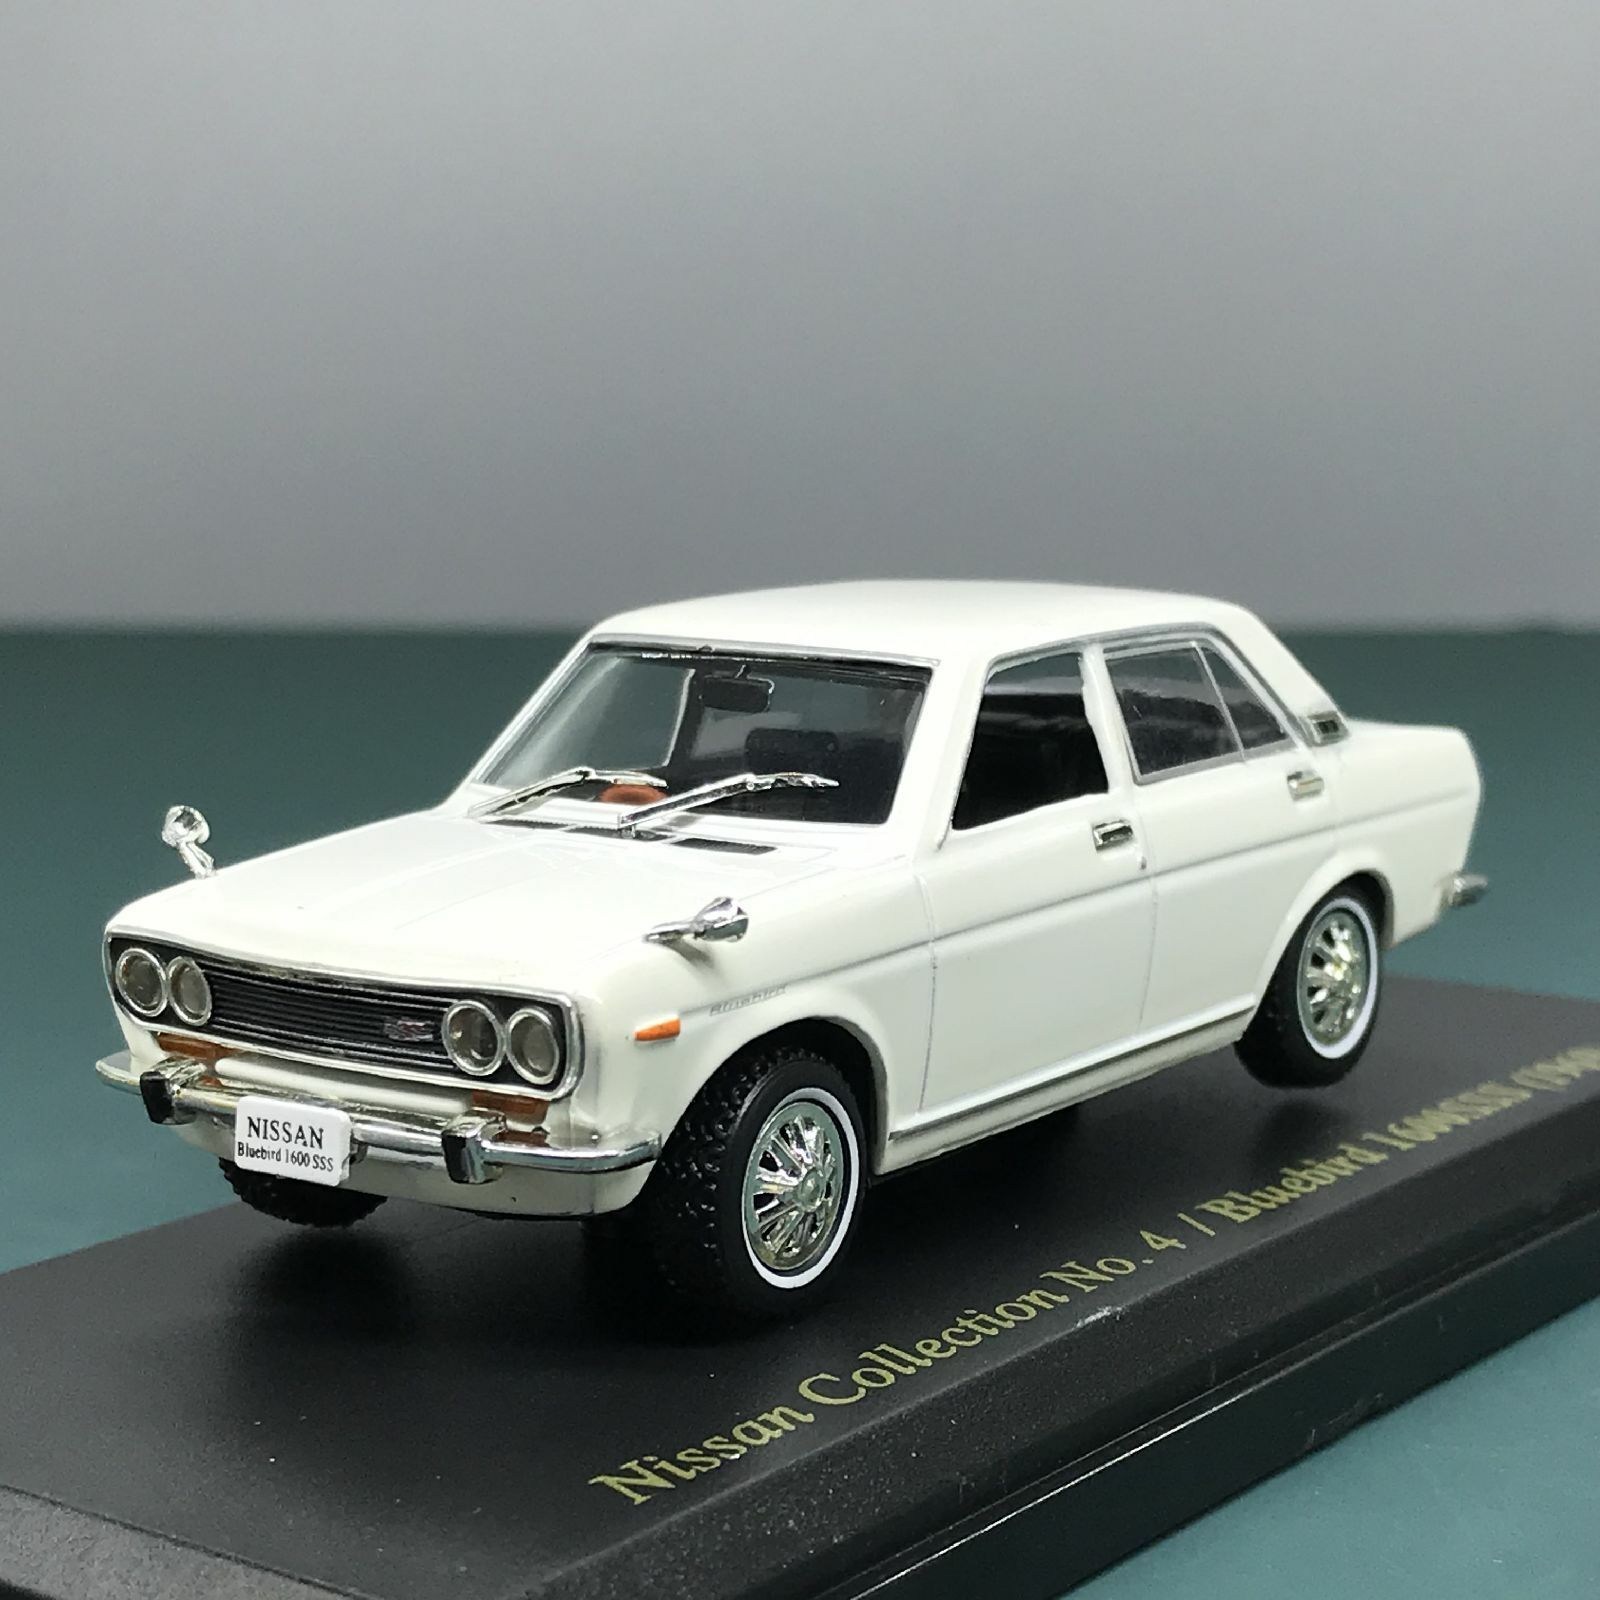 Mini Car Nissan Bluebird 1600 SSS 1969 1/43 Scale Box Display Diecast vol 4